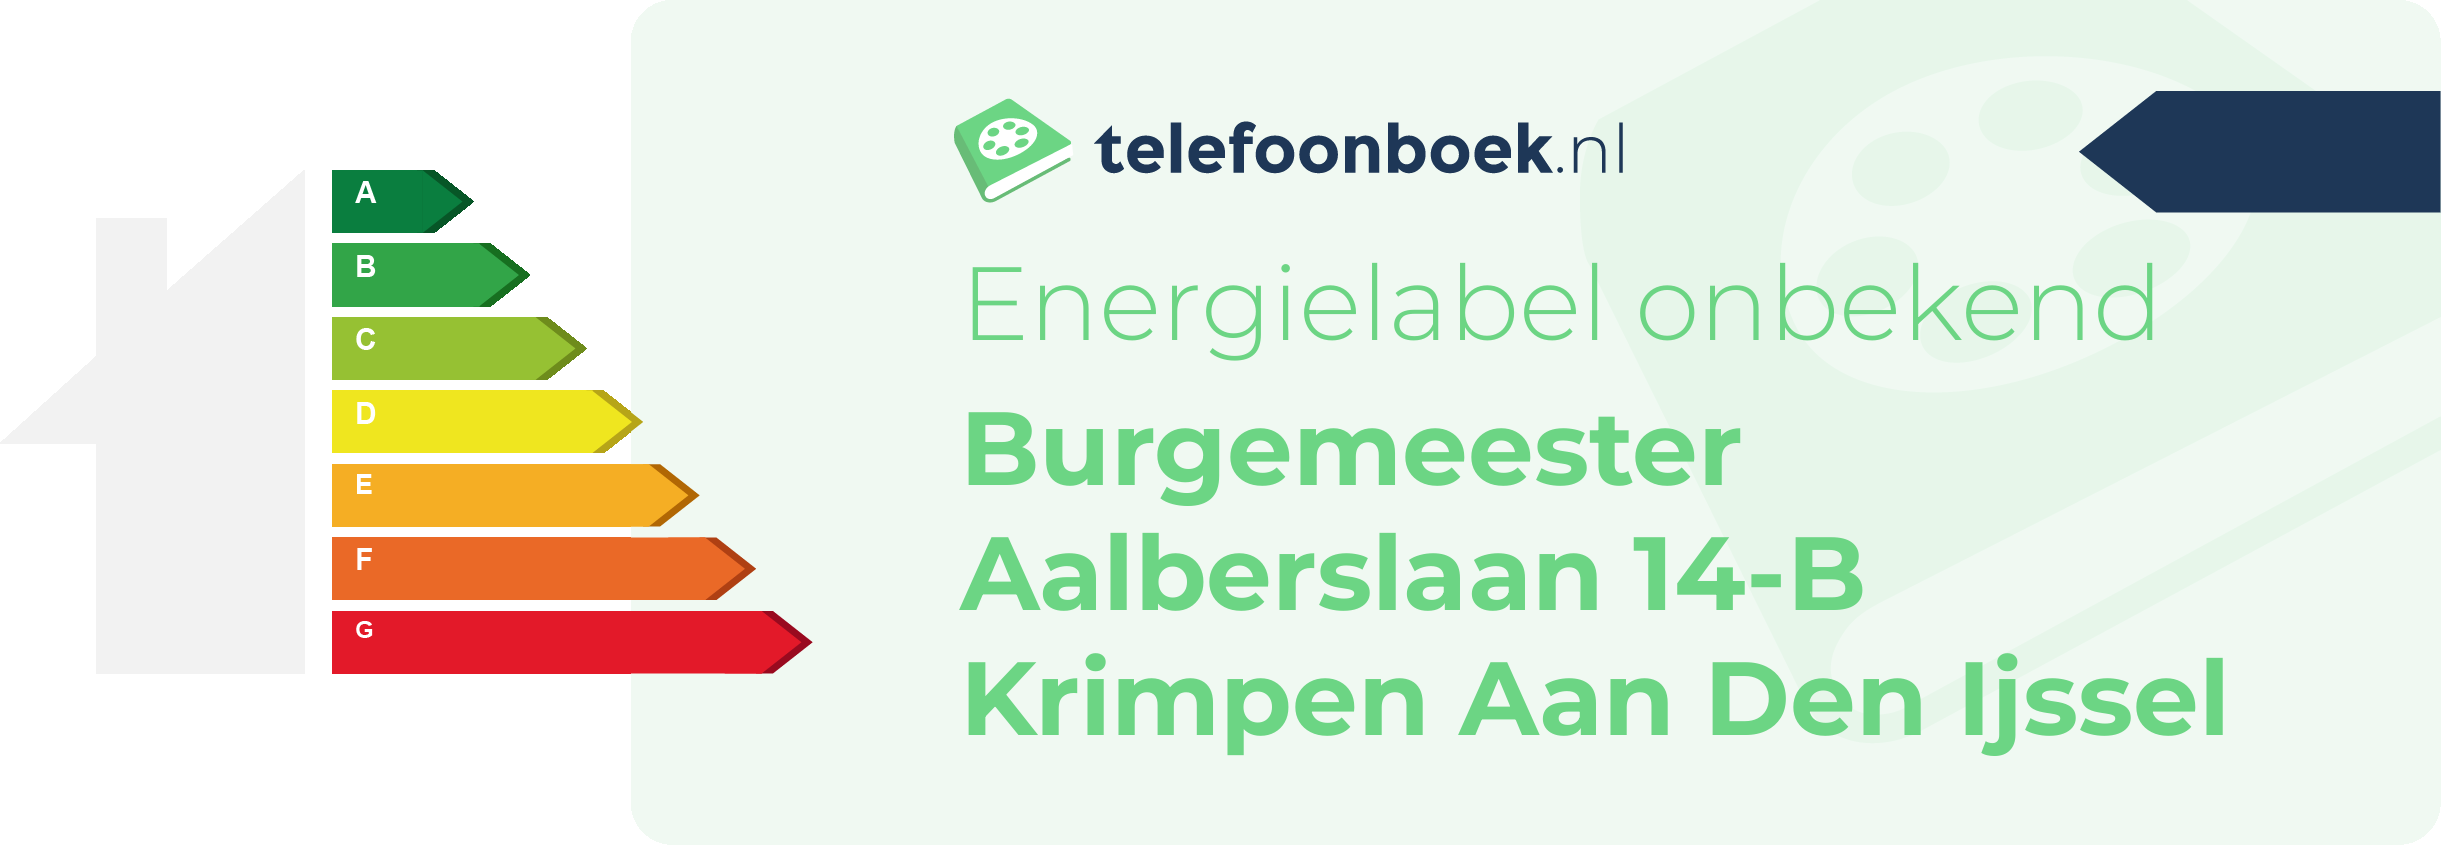 Energielabel Burgemeester Aalberslaan 14-B Krimpen Aan Den Ijssel